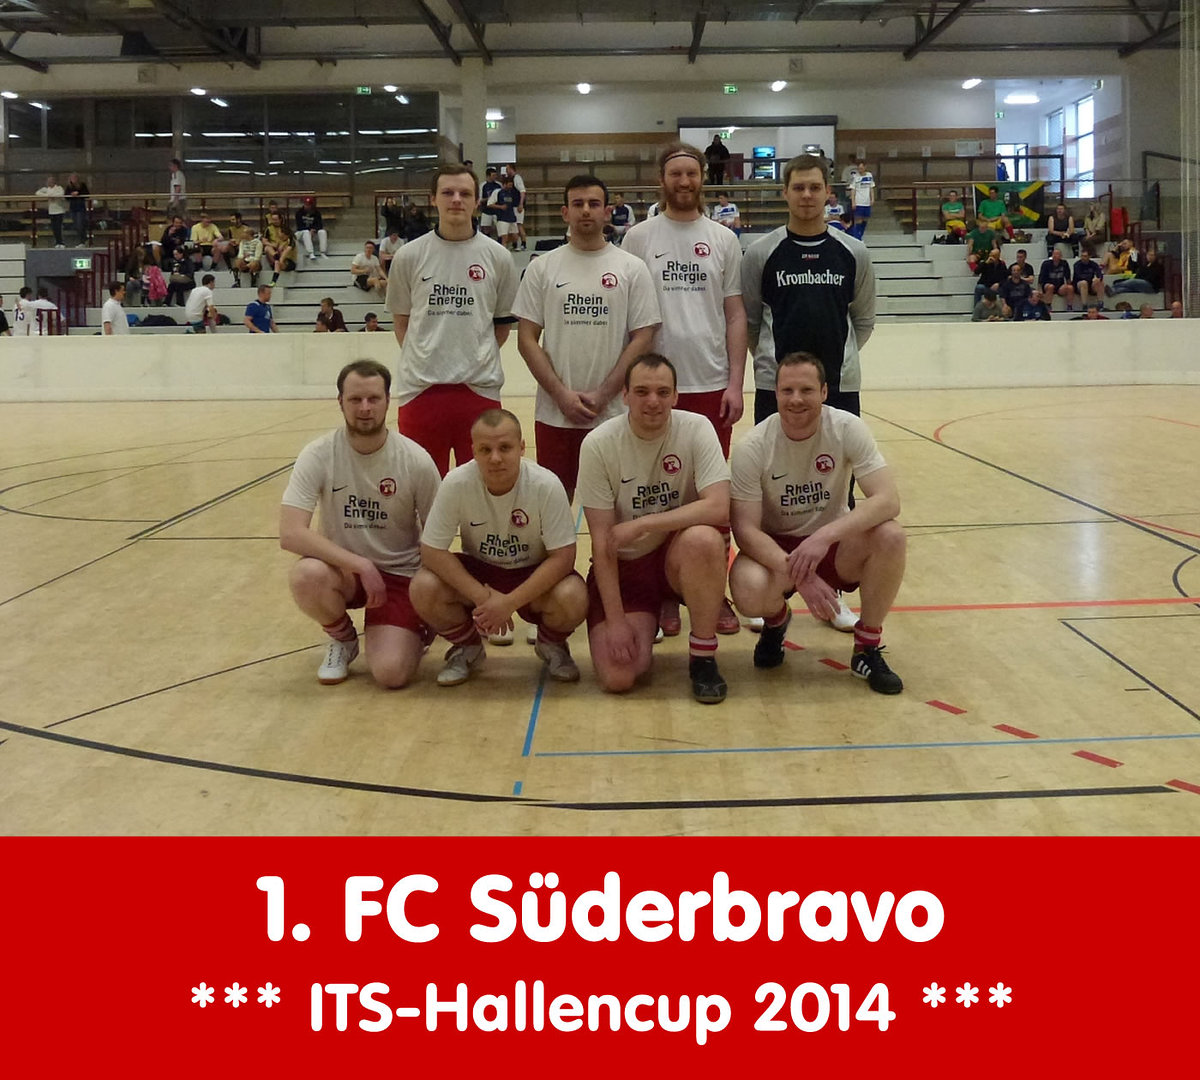 Its hallencup 2014   teamfotos   1. fc s%c3%bcderbravo retina